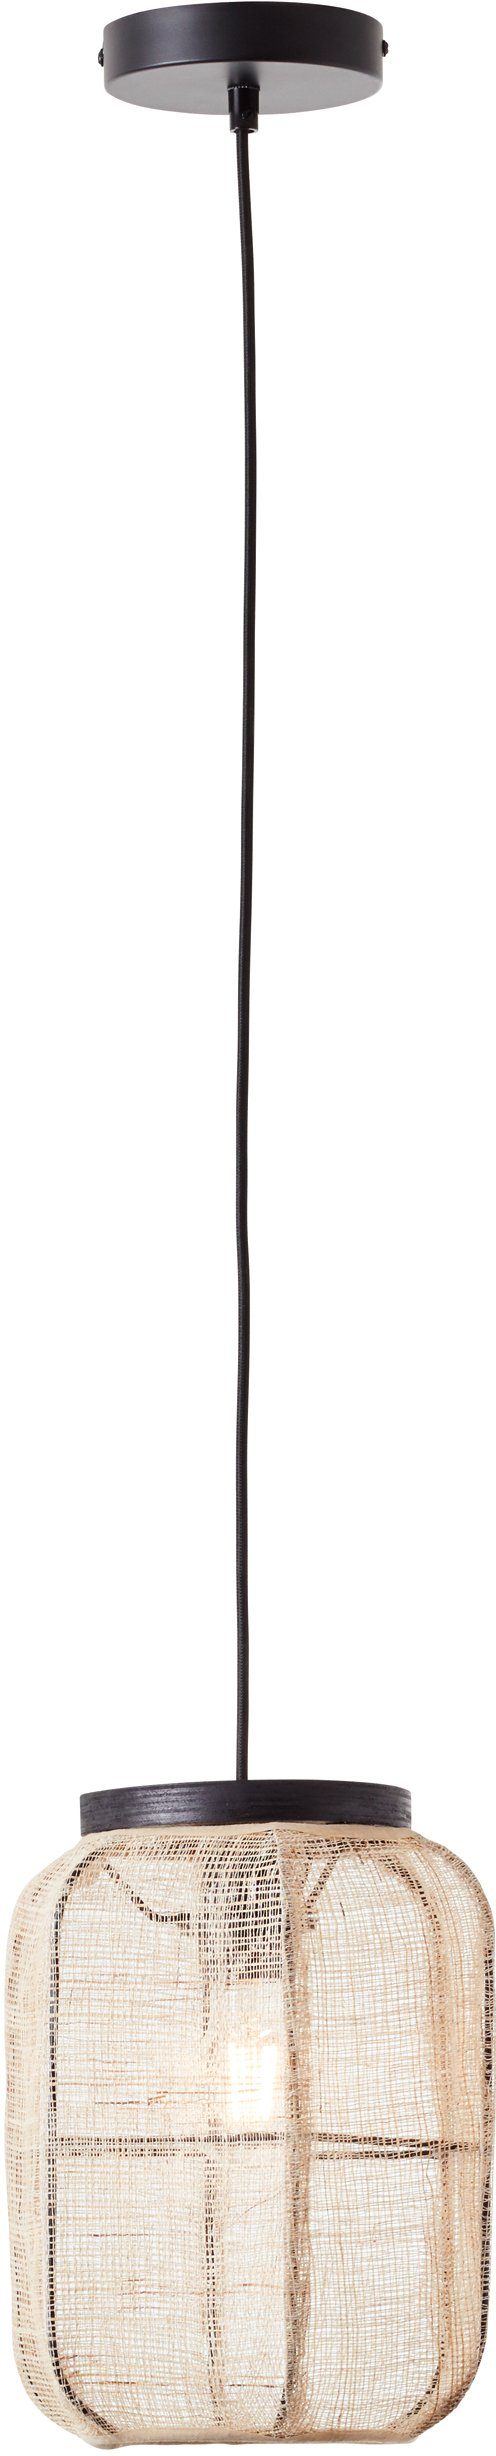 Durchmesser, Leuchtmittel, Schirm Hängelampe und Textil aus mit Rouez, affaire Home Pendelleuchte 22cm ohne Holz